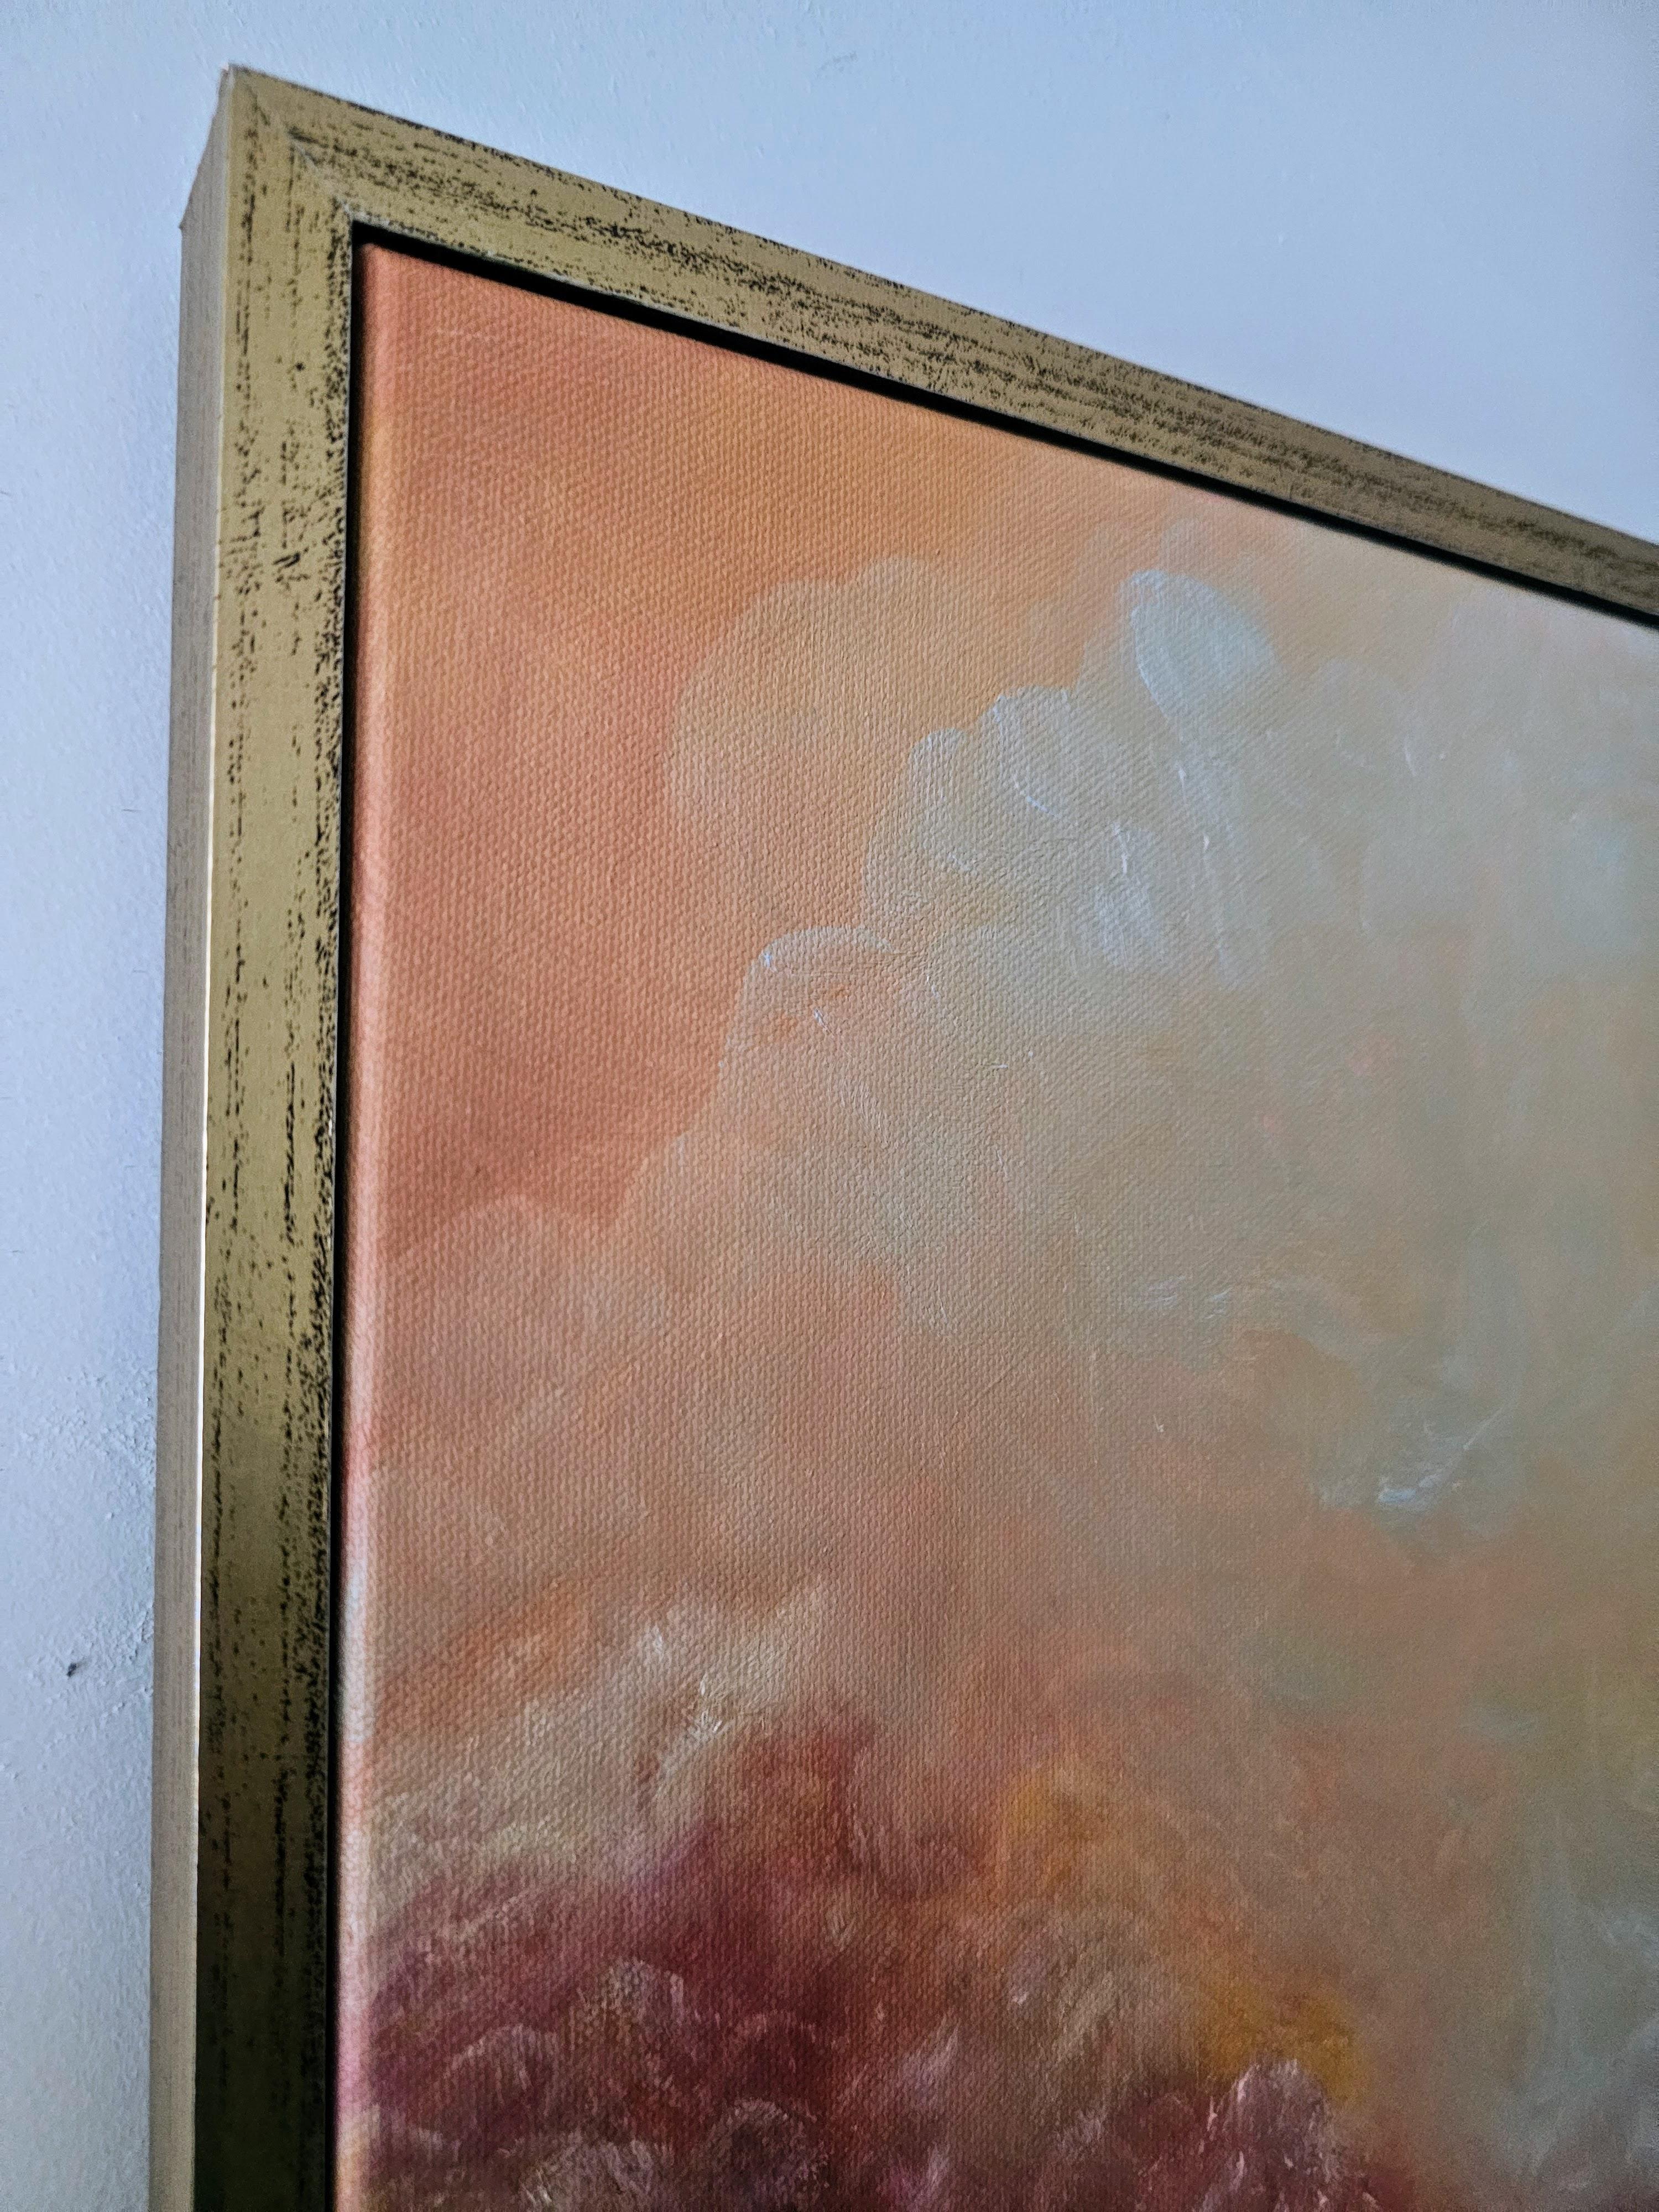 Und dann war da noch das Licht - Abstraktes Landschaftsgemälde in Gold und Orange bei Sonnenuntergang (Abstrakter Impressionismus), Painting, von Jennifer L. Baker